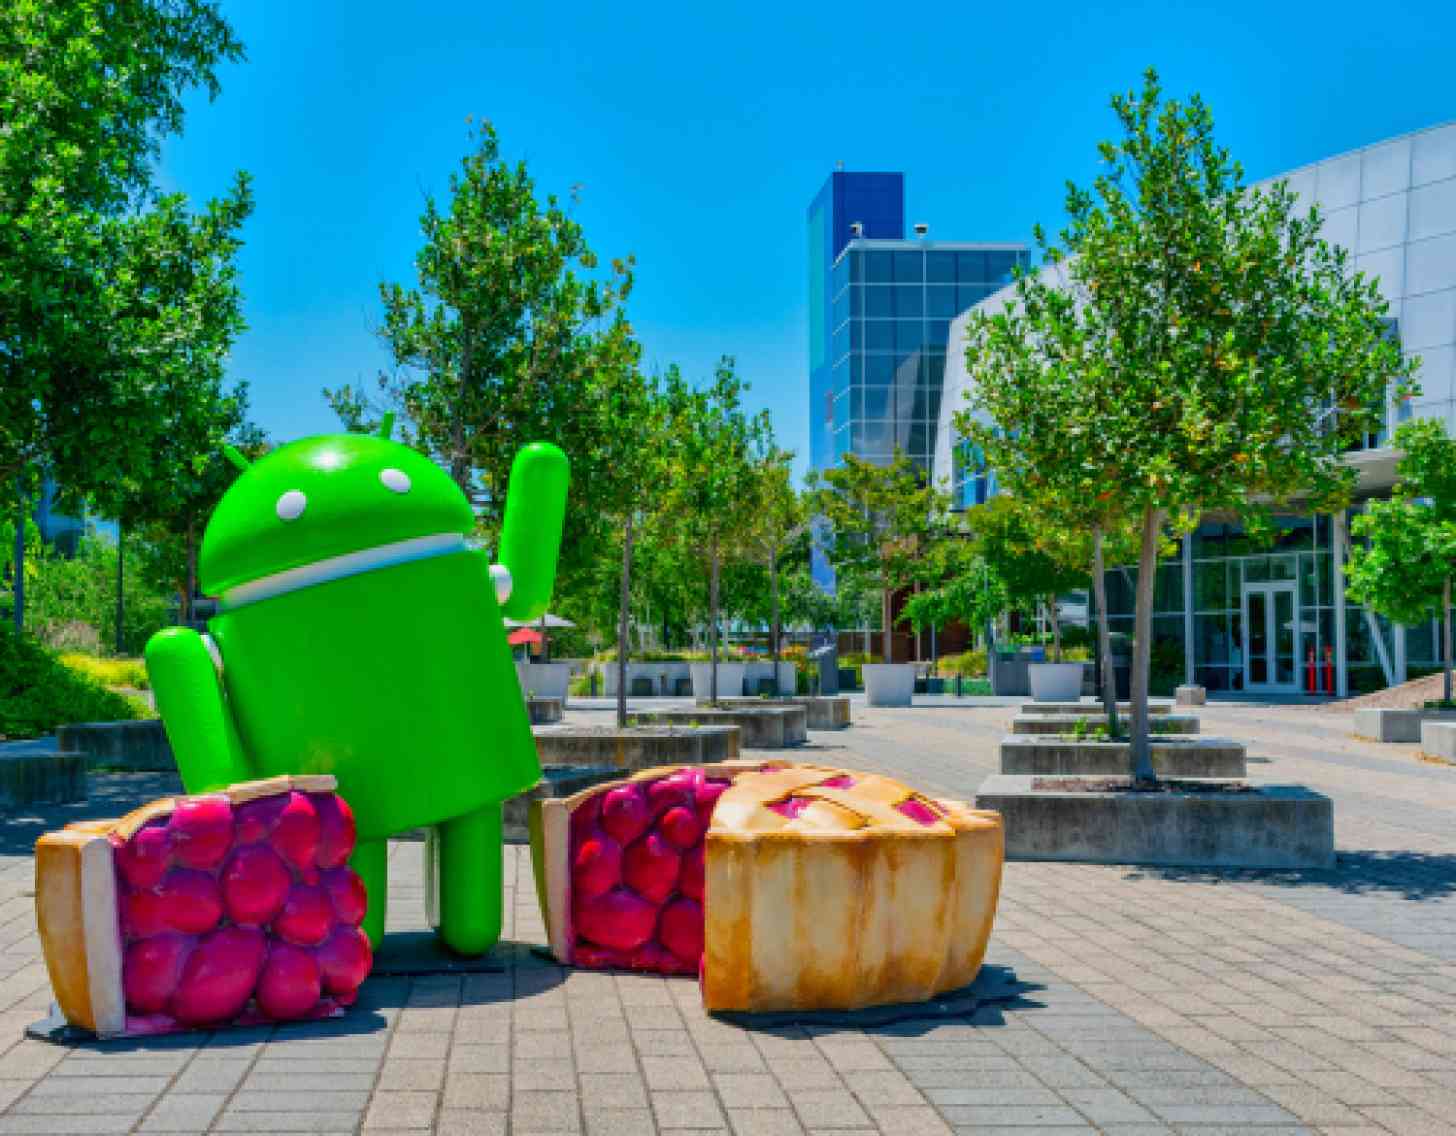  解锁LG V40 ThinQ获得Android 9 Pie更新 